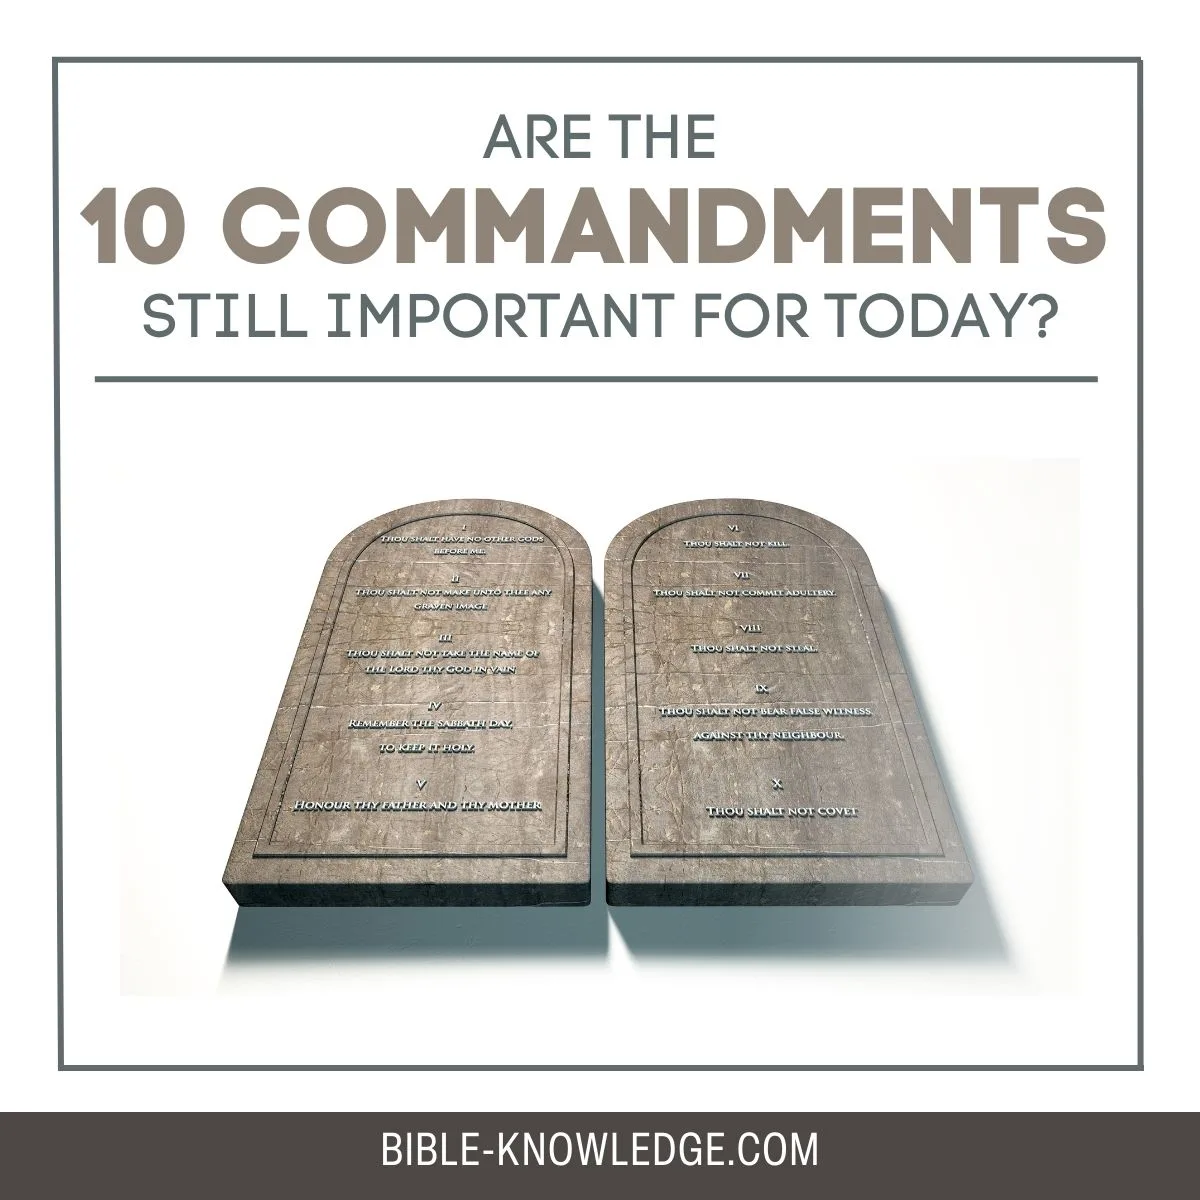 real ten commandments